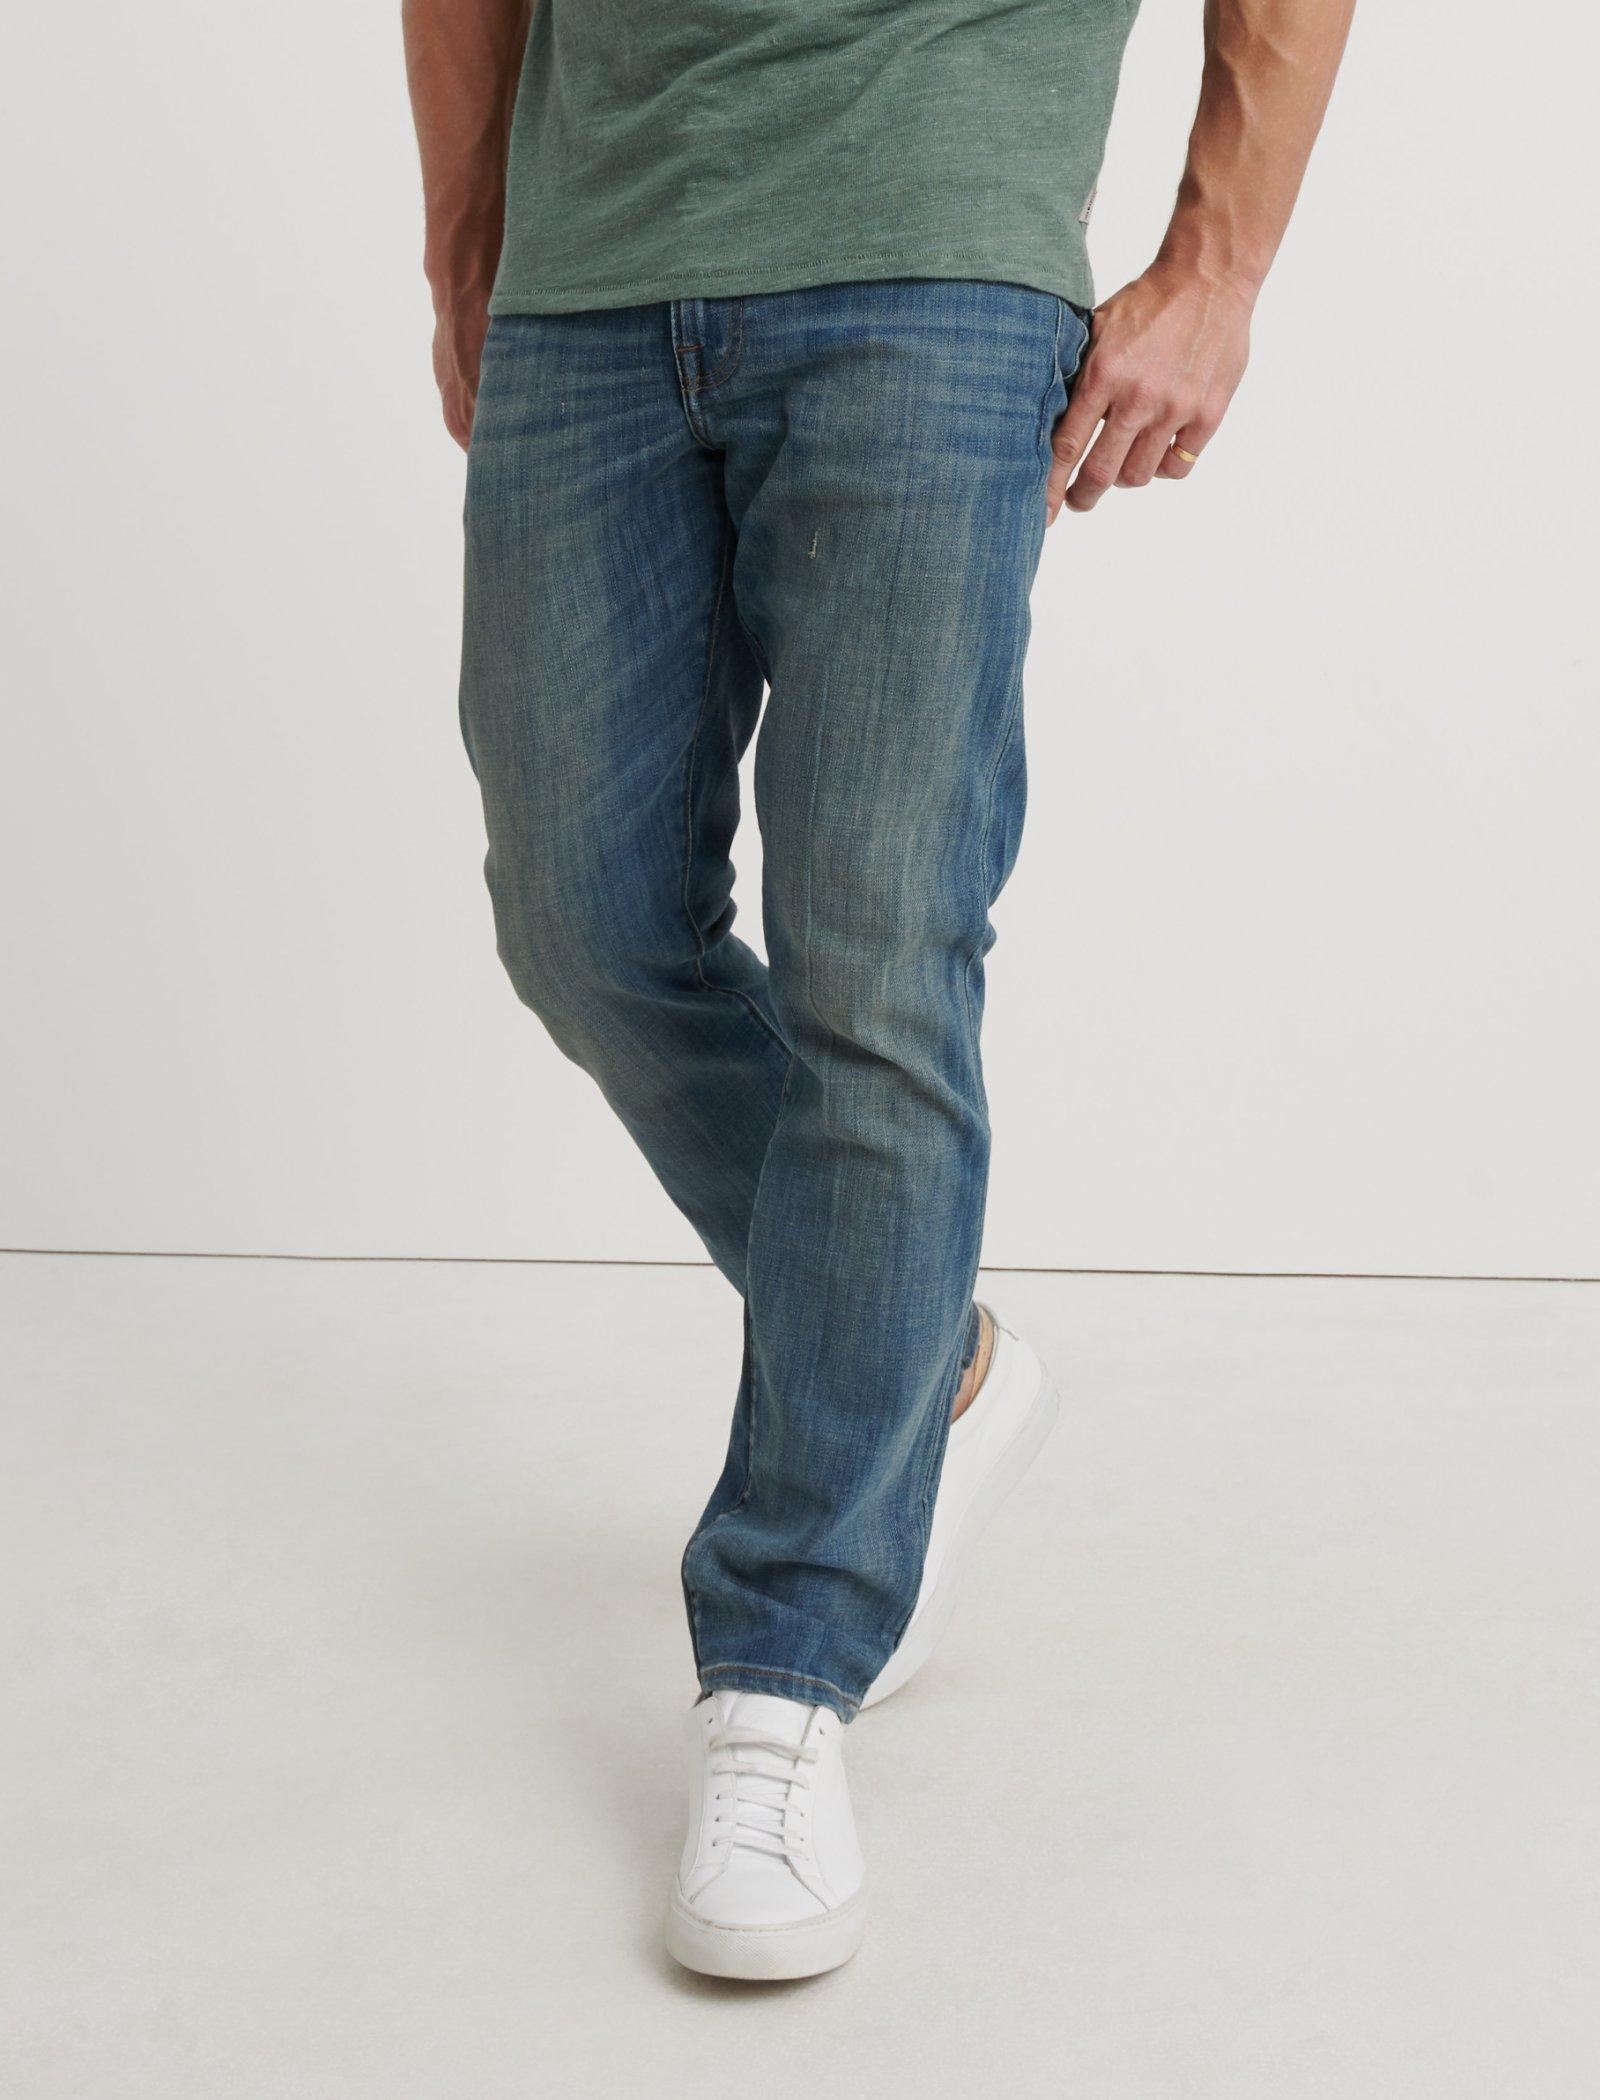 lucky brand men's slim jeans